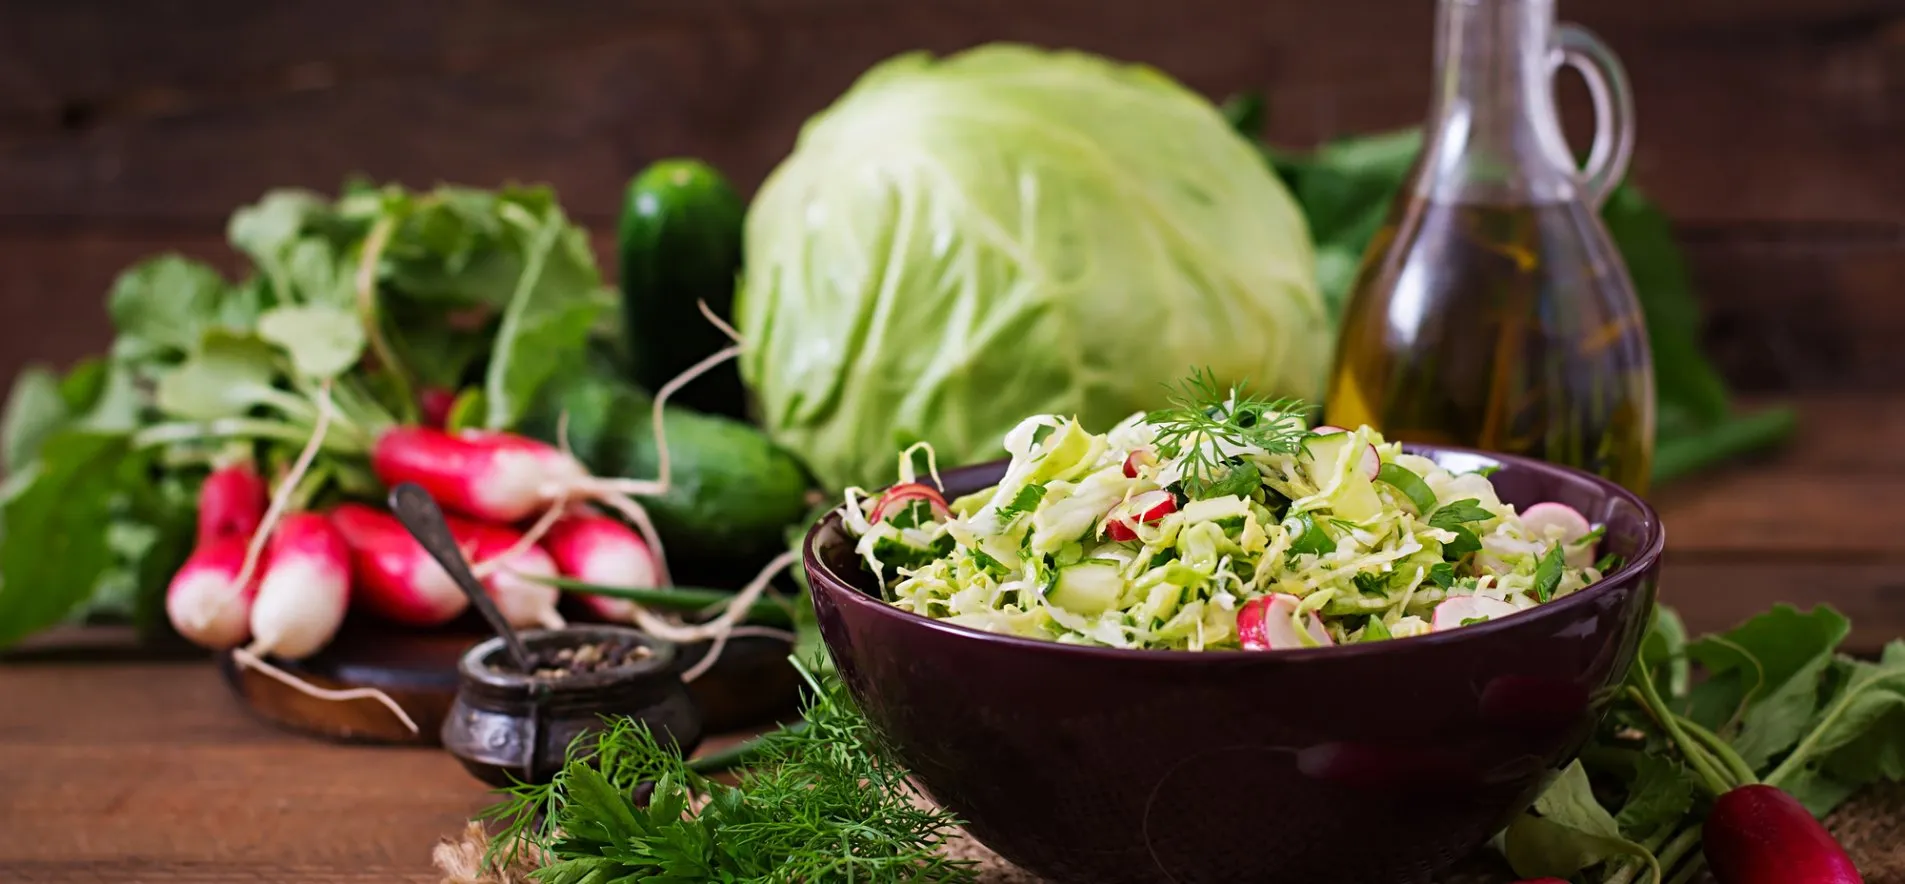 Ароматный и очень сочный: готовим салат Весенний из молодой капусты и редиса